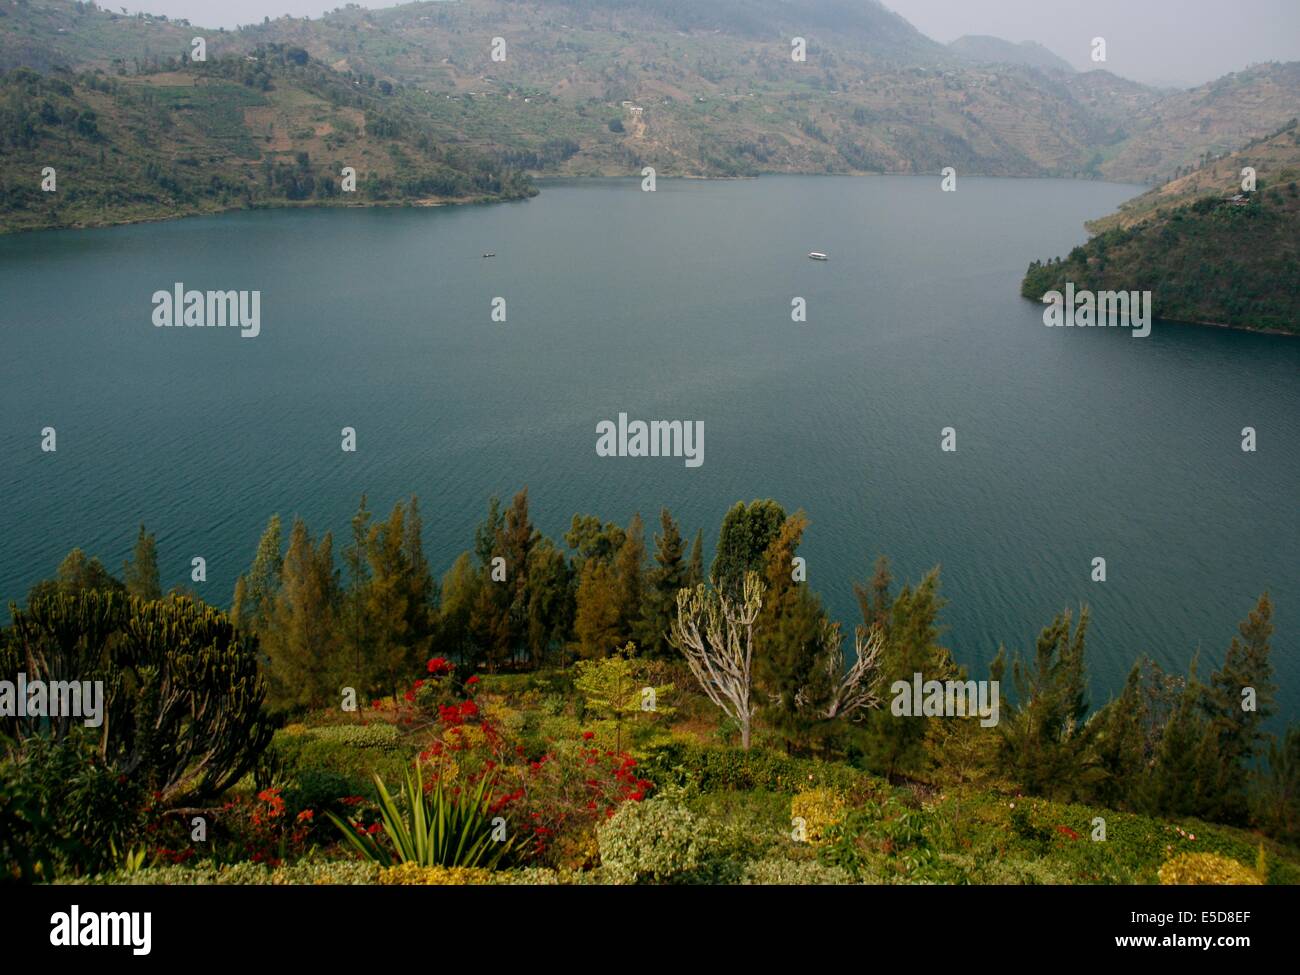 Lake Kivu at Kibuye / Karongi, Rwanda, Africa Stock Photo